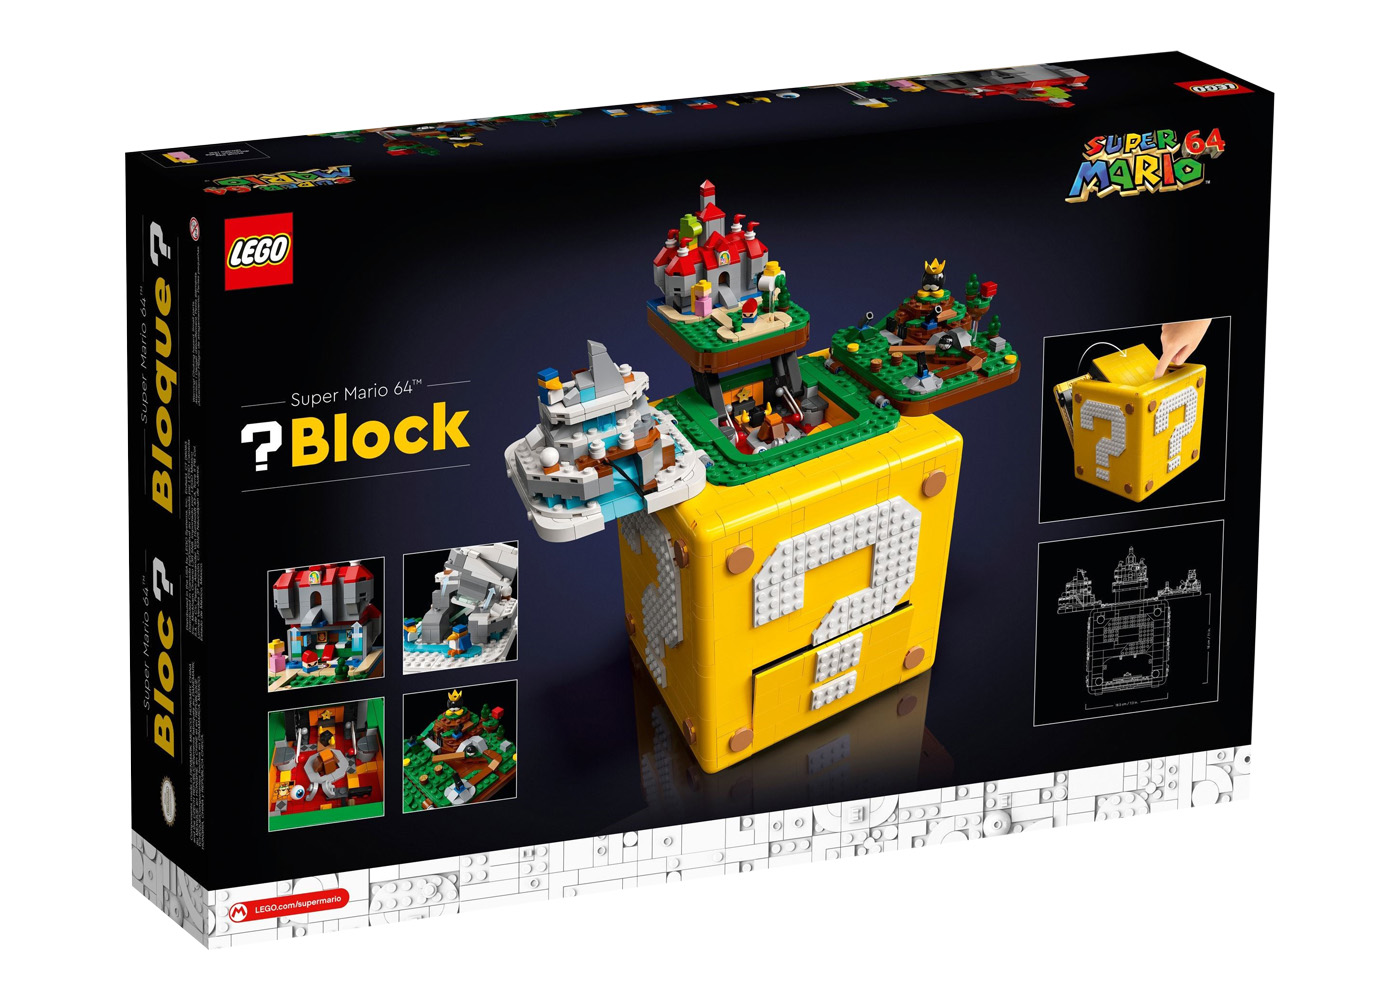 LEGO Super Mario 64 ? Block Set 71395 - FW21 - US